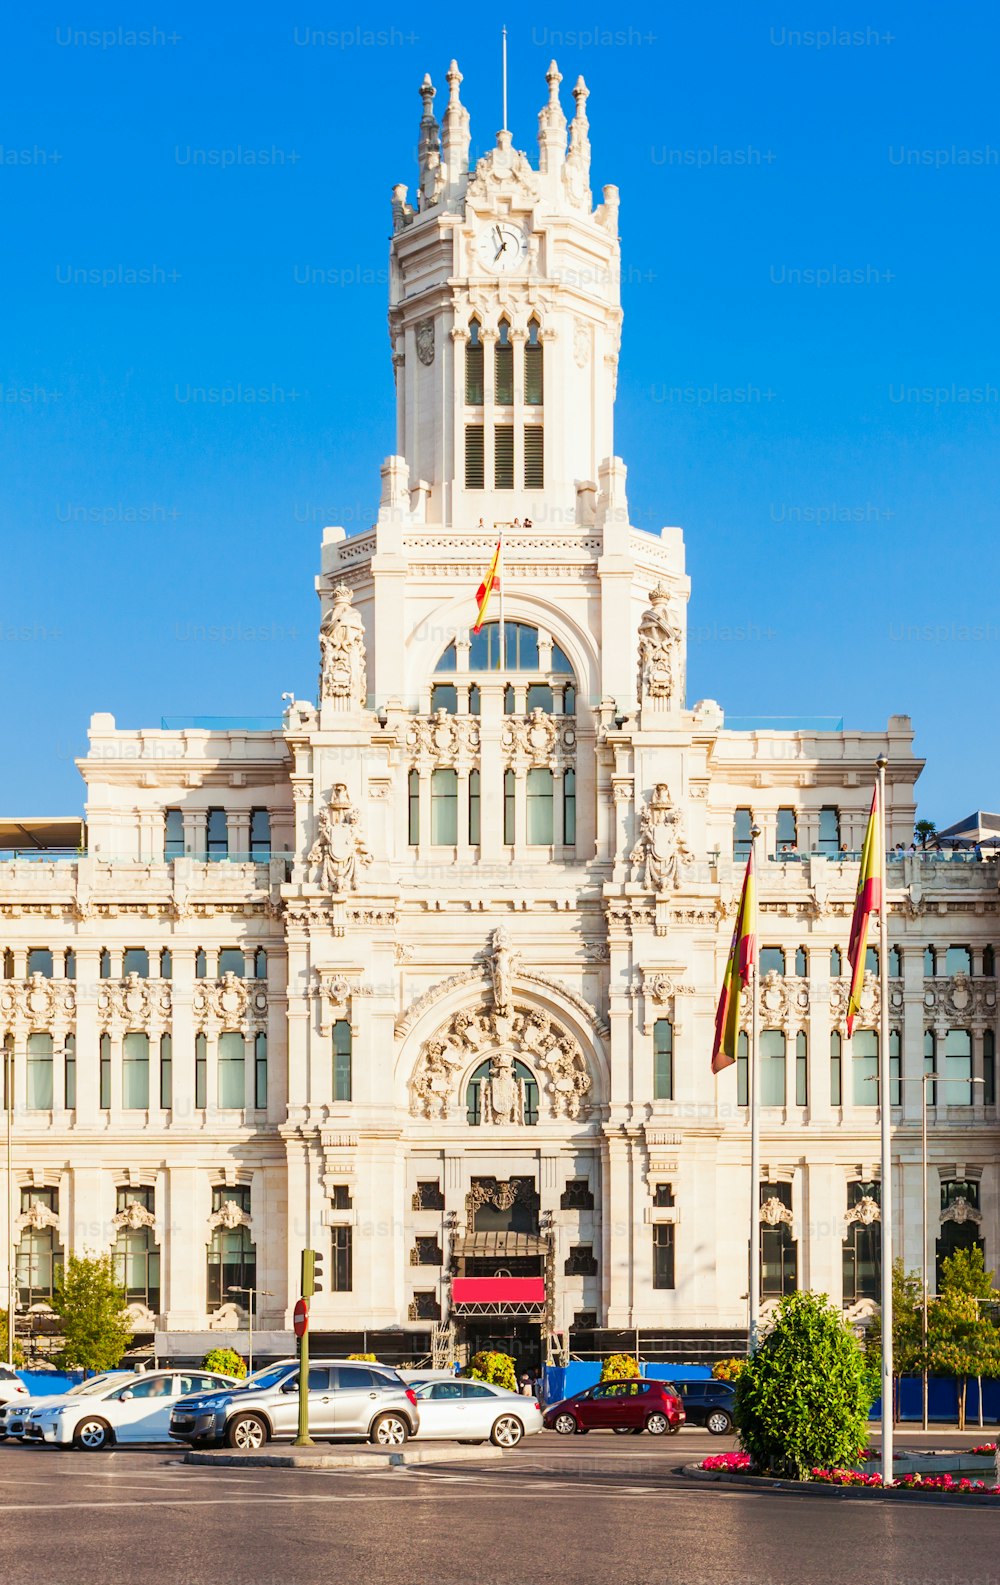 Le palais de Cybèle ou Palacio de Cibeles est un palais situé sur la Plaza de Cibeles dans le centre-ville de Madrid, en Espagne.